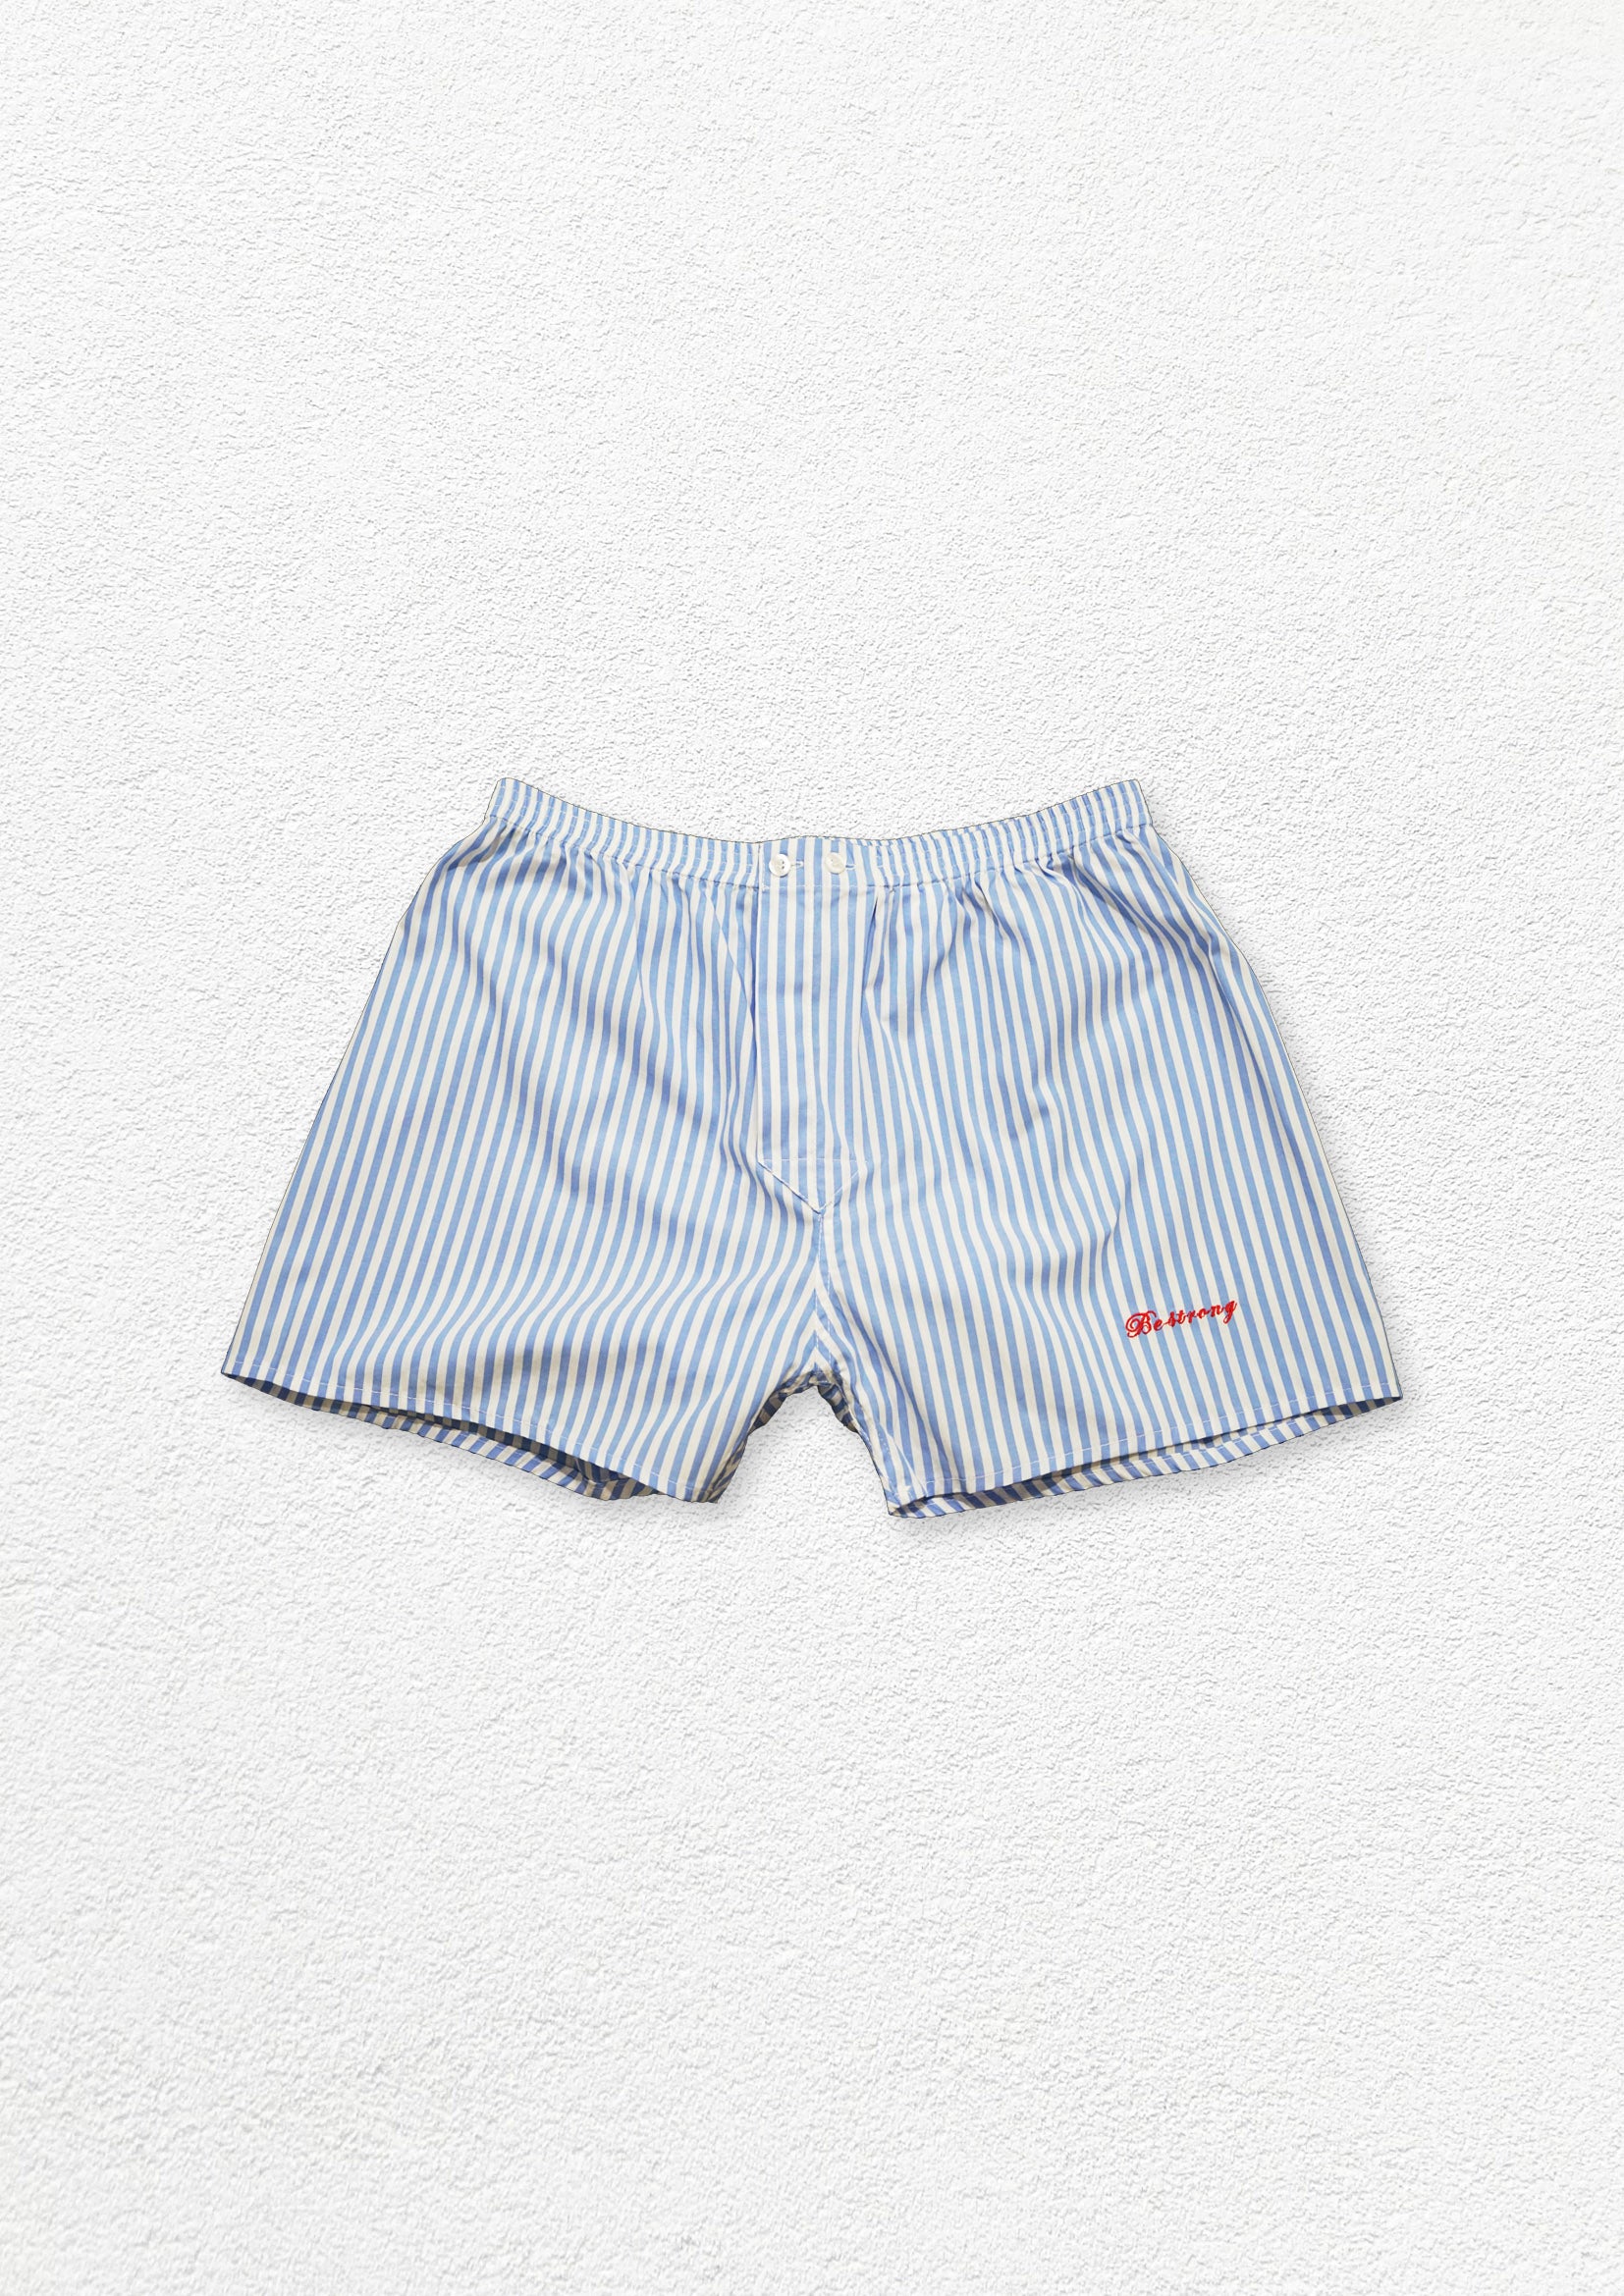 Unisex striped boxer shorts underwear - light blue